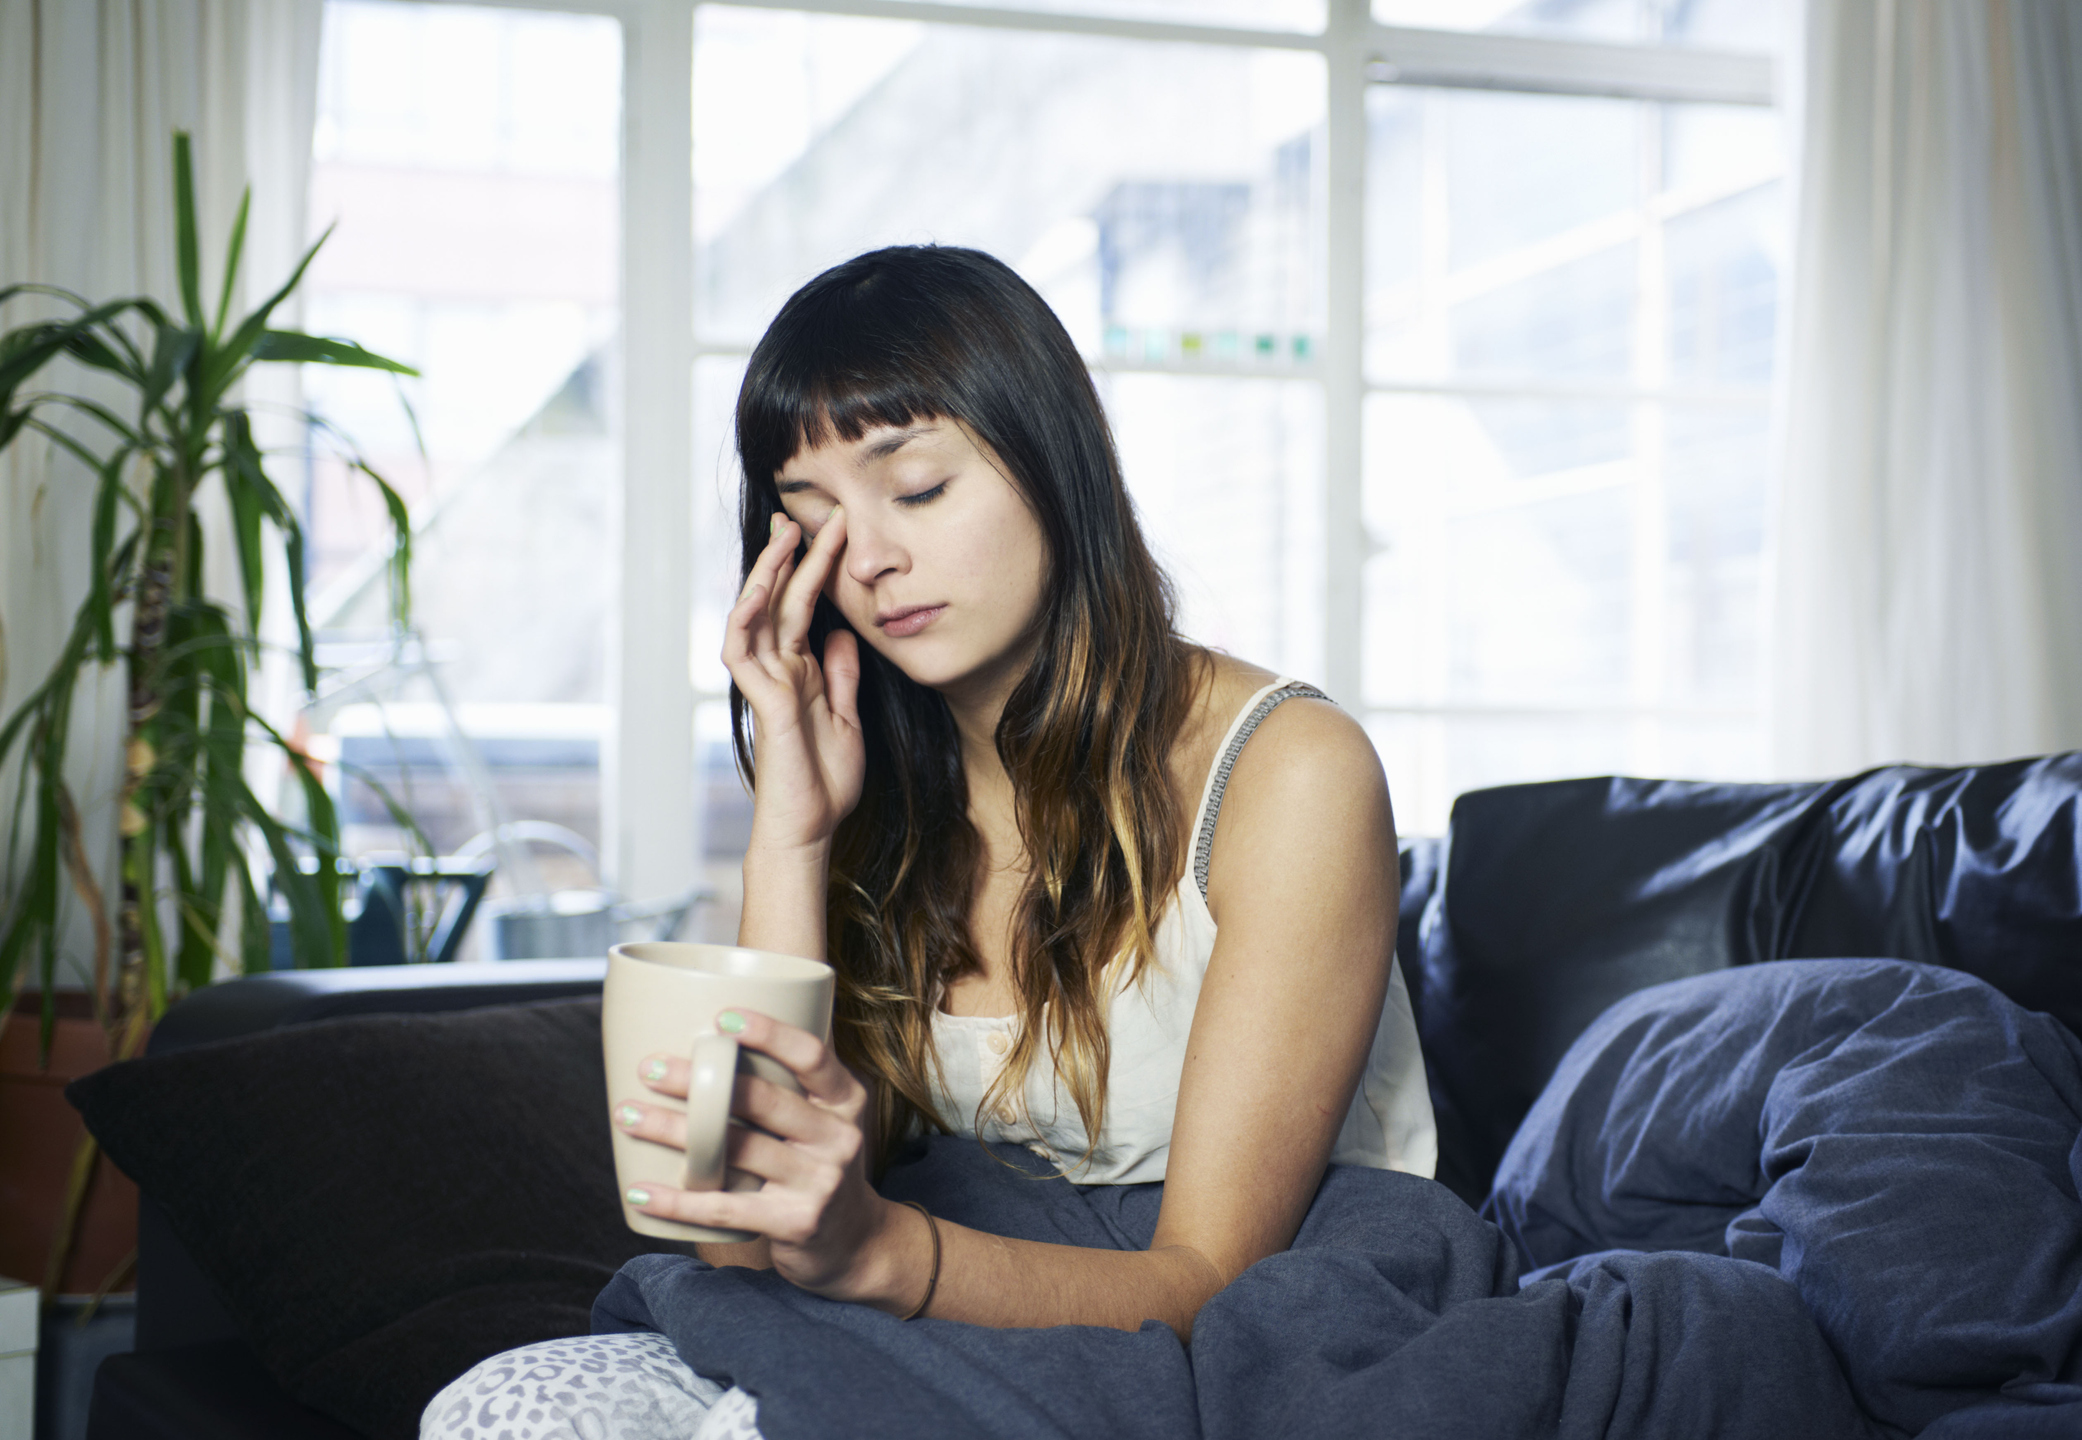 Una chica intentando combatir el cansancio con un café.